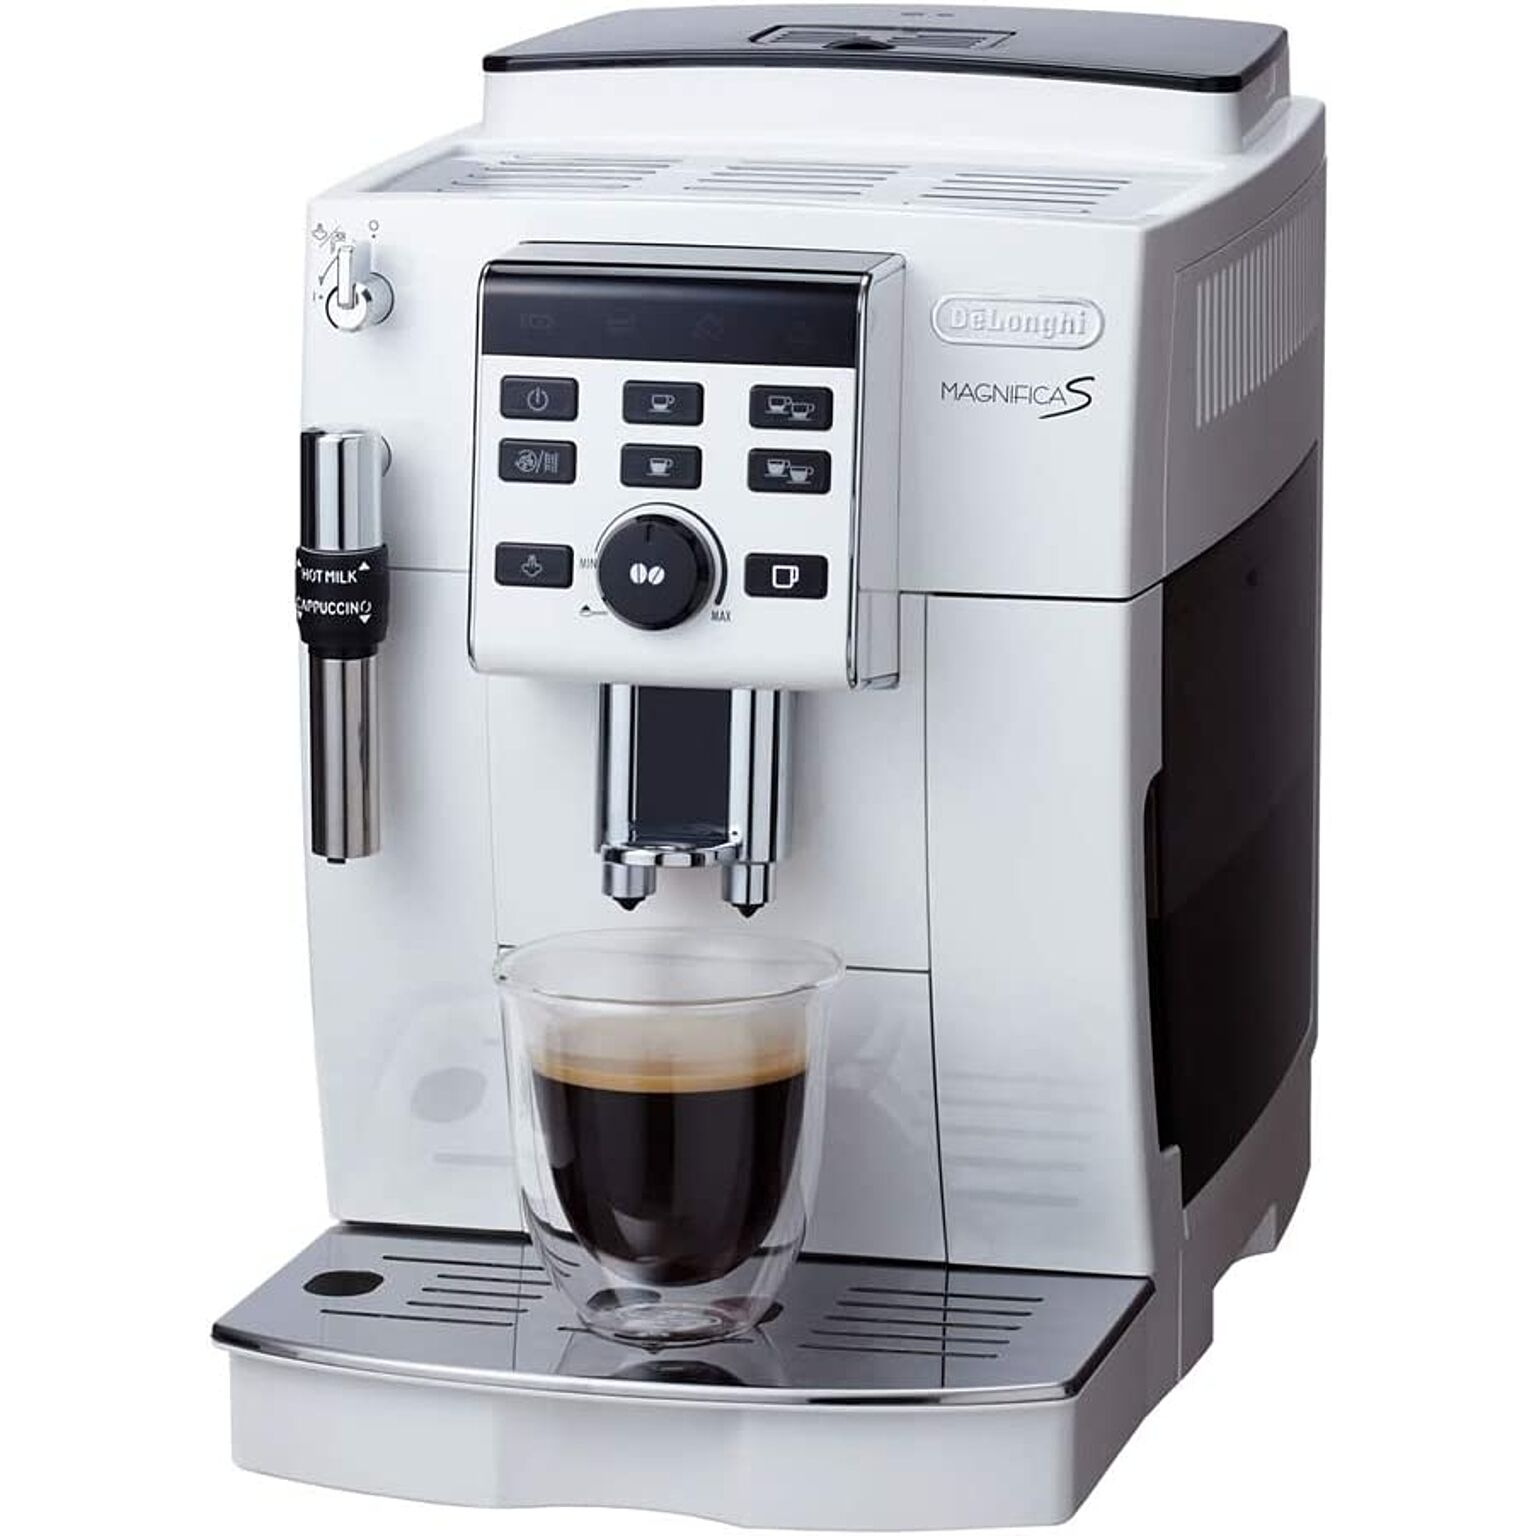 【セミスタンダードモデル】デロンギ(DeLonghi)コンパクト全自動コーヒーメーカー 1.8L ホワイト マグニフィカS ミルク泡立て手動 ECAM23120WN